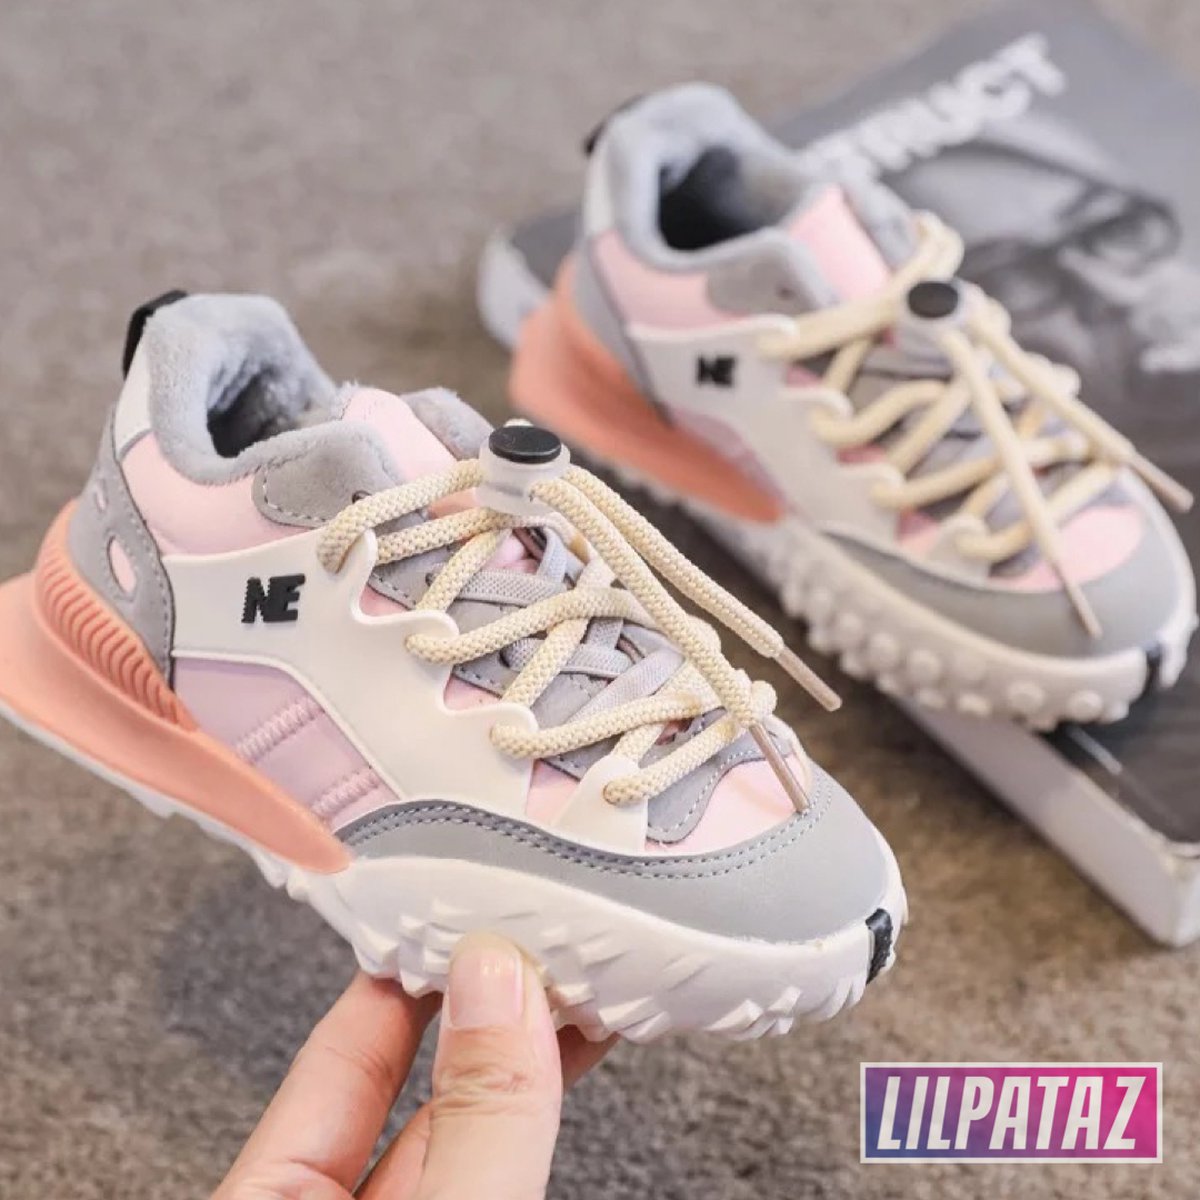 LilPataz Moon Spikes - Lage sneakers - meisjes kids kinderen - Roze Wit - Maat 22